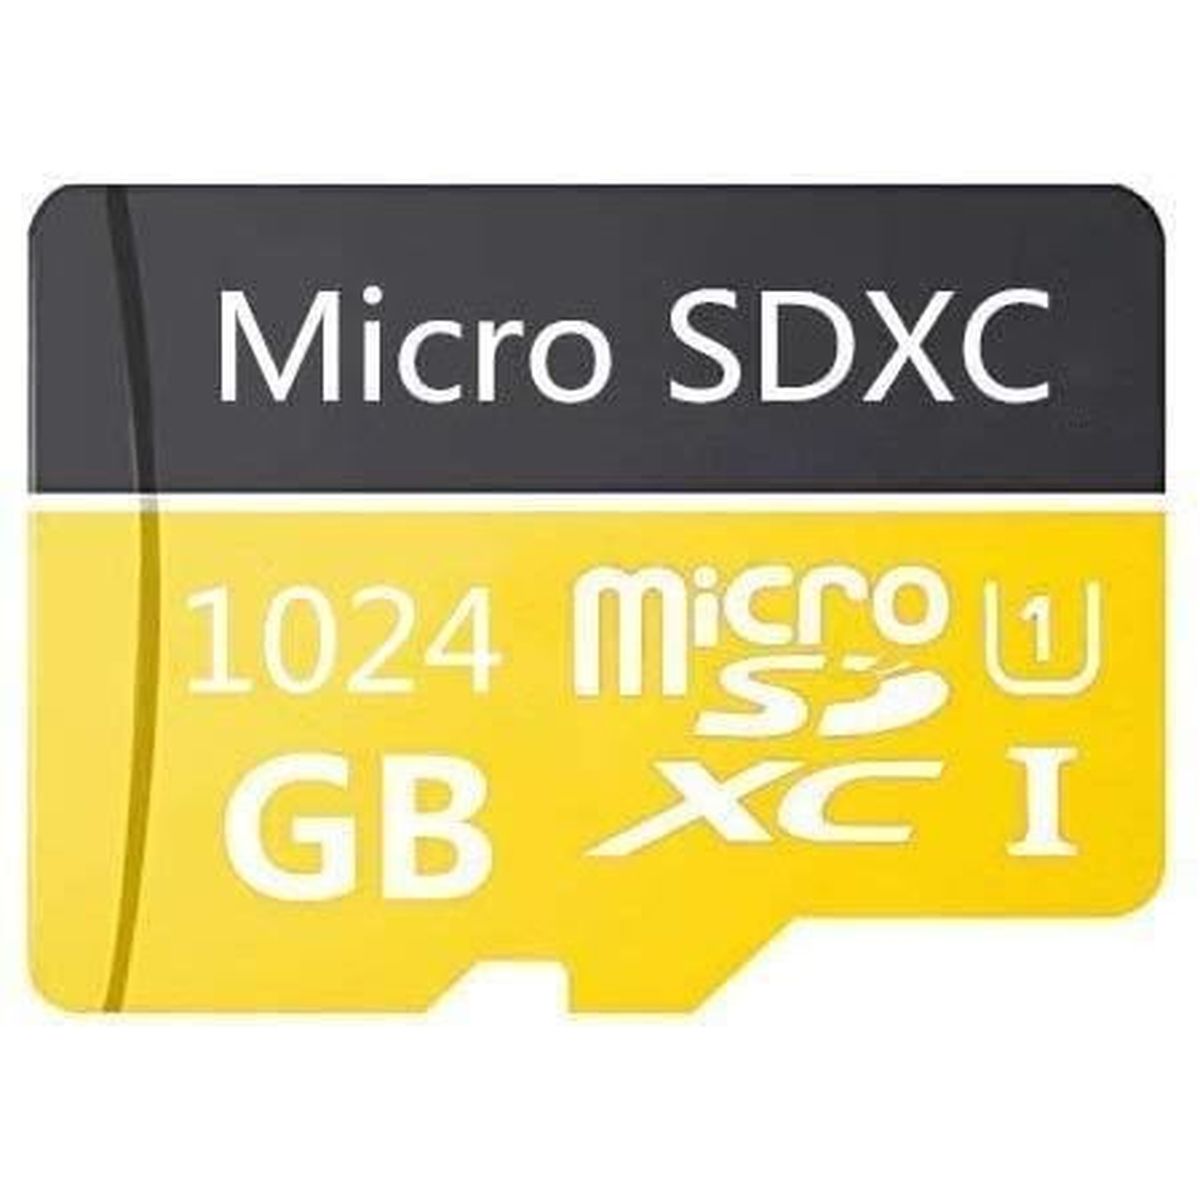 Carte Micro SD 64 Go/128 Go/256 Go/400 Go/512 Go/1024 Go Haute Vitesse Classe 10 Carte Micro SD SDXC avec adaptateur 400 Go 